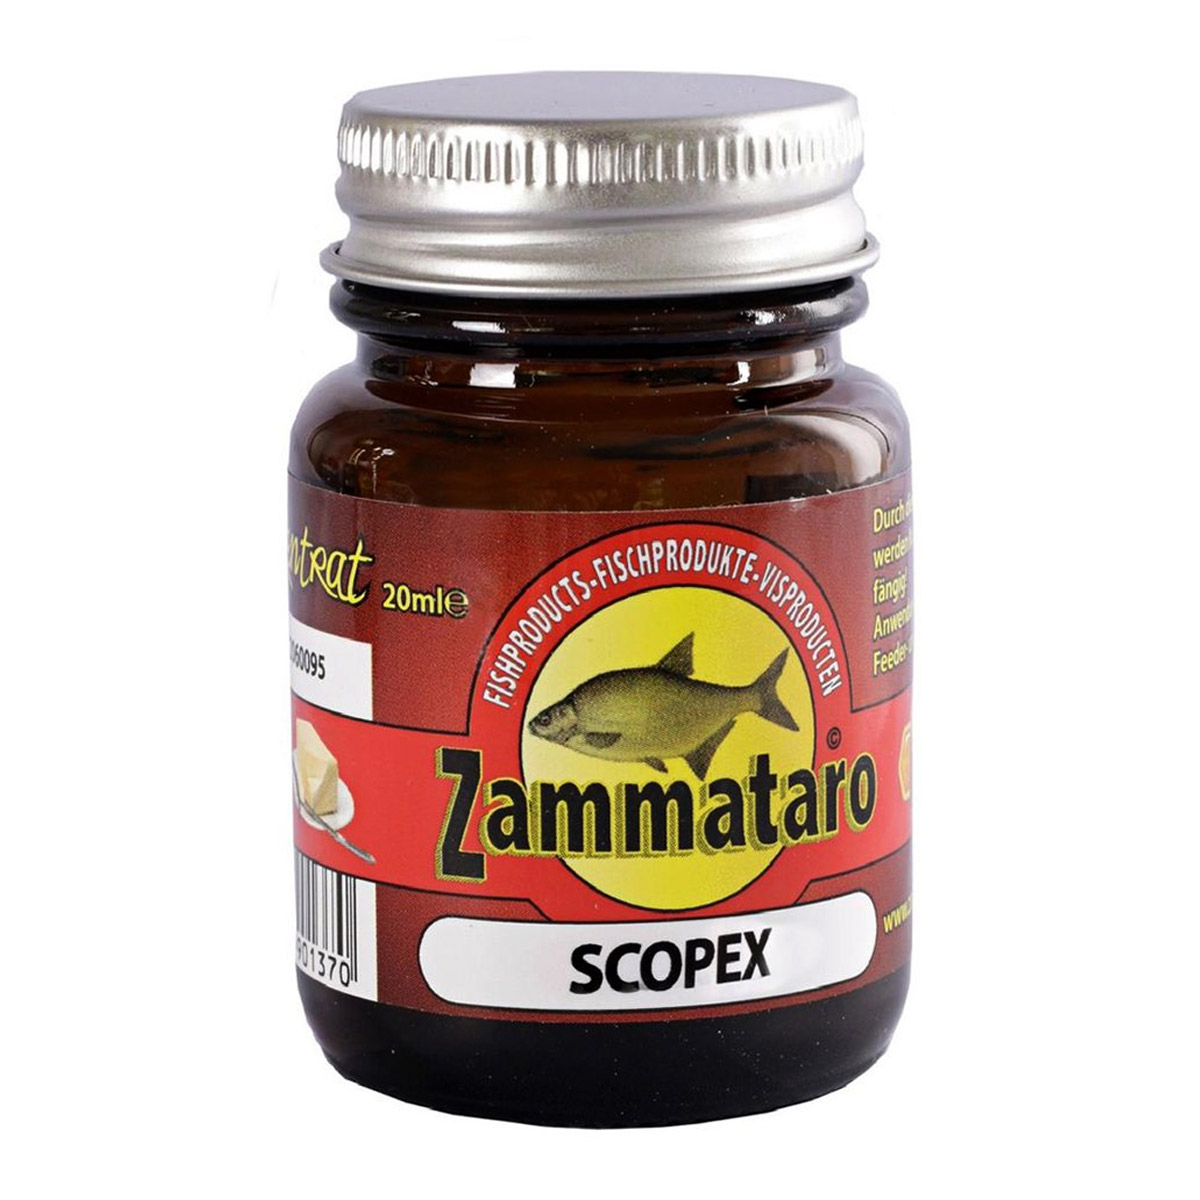 Zammataro Scopex Dompel 20 ml